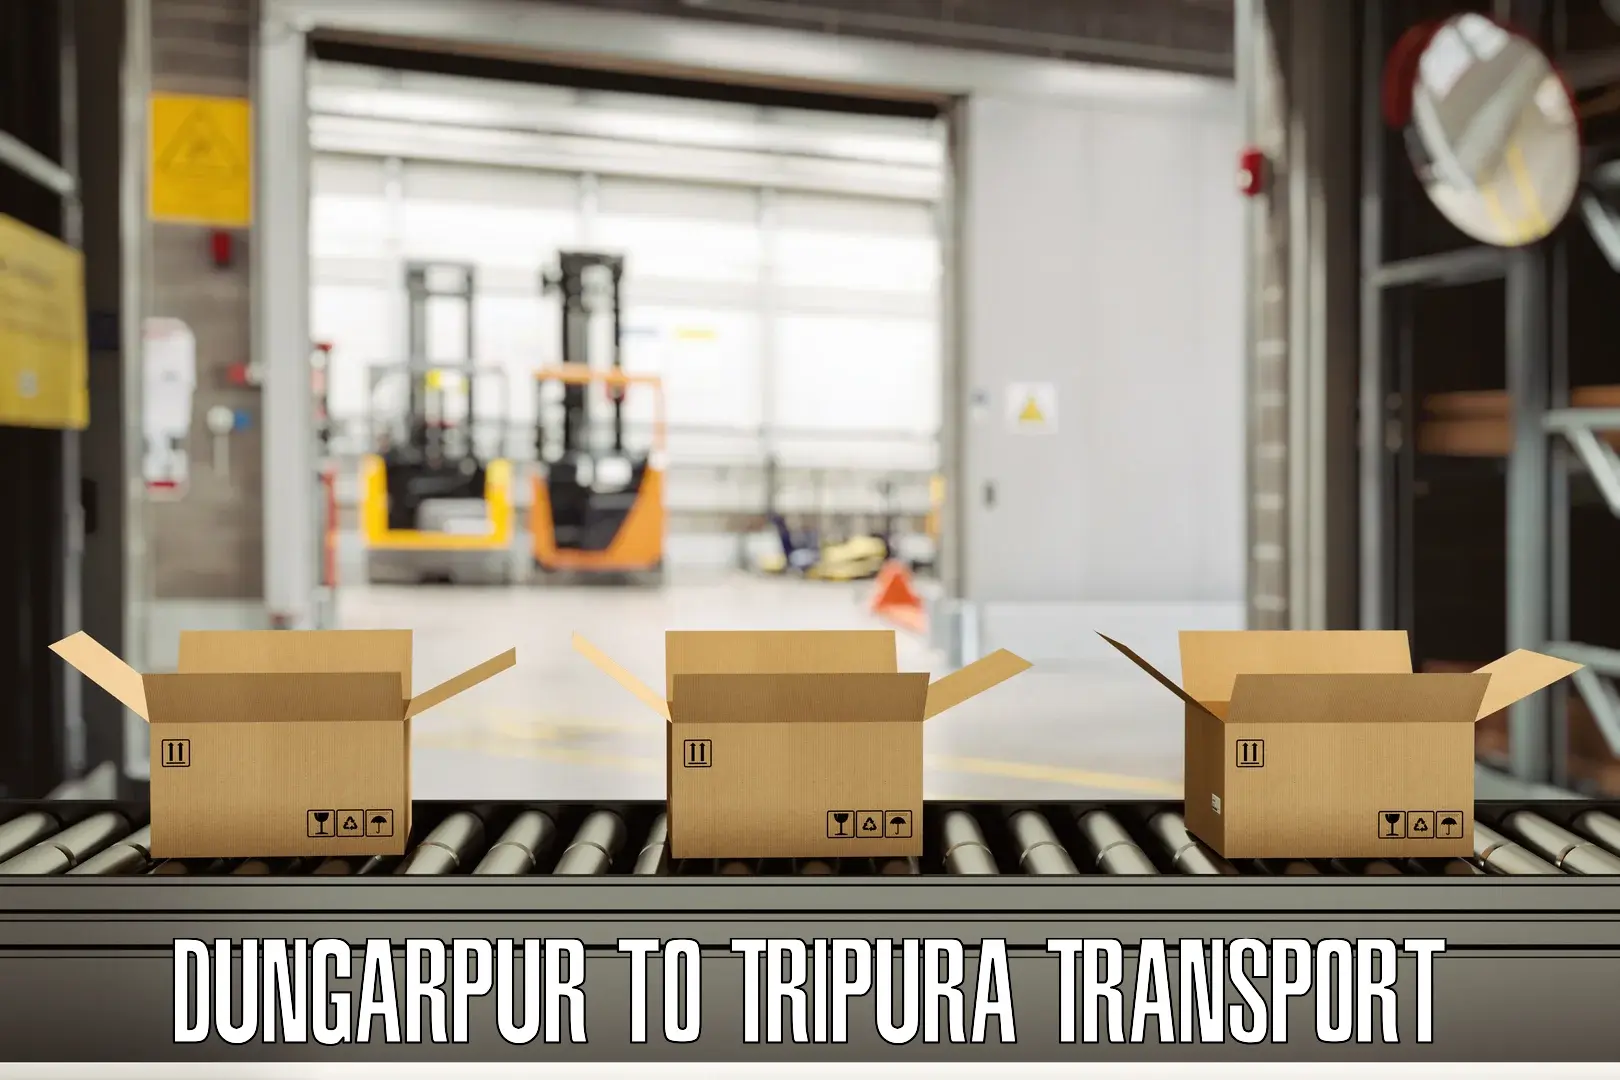 Furniture transport service Dungarpur to Dhalai